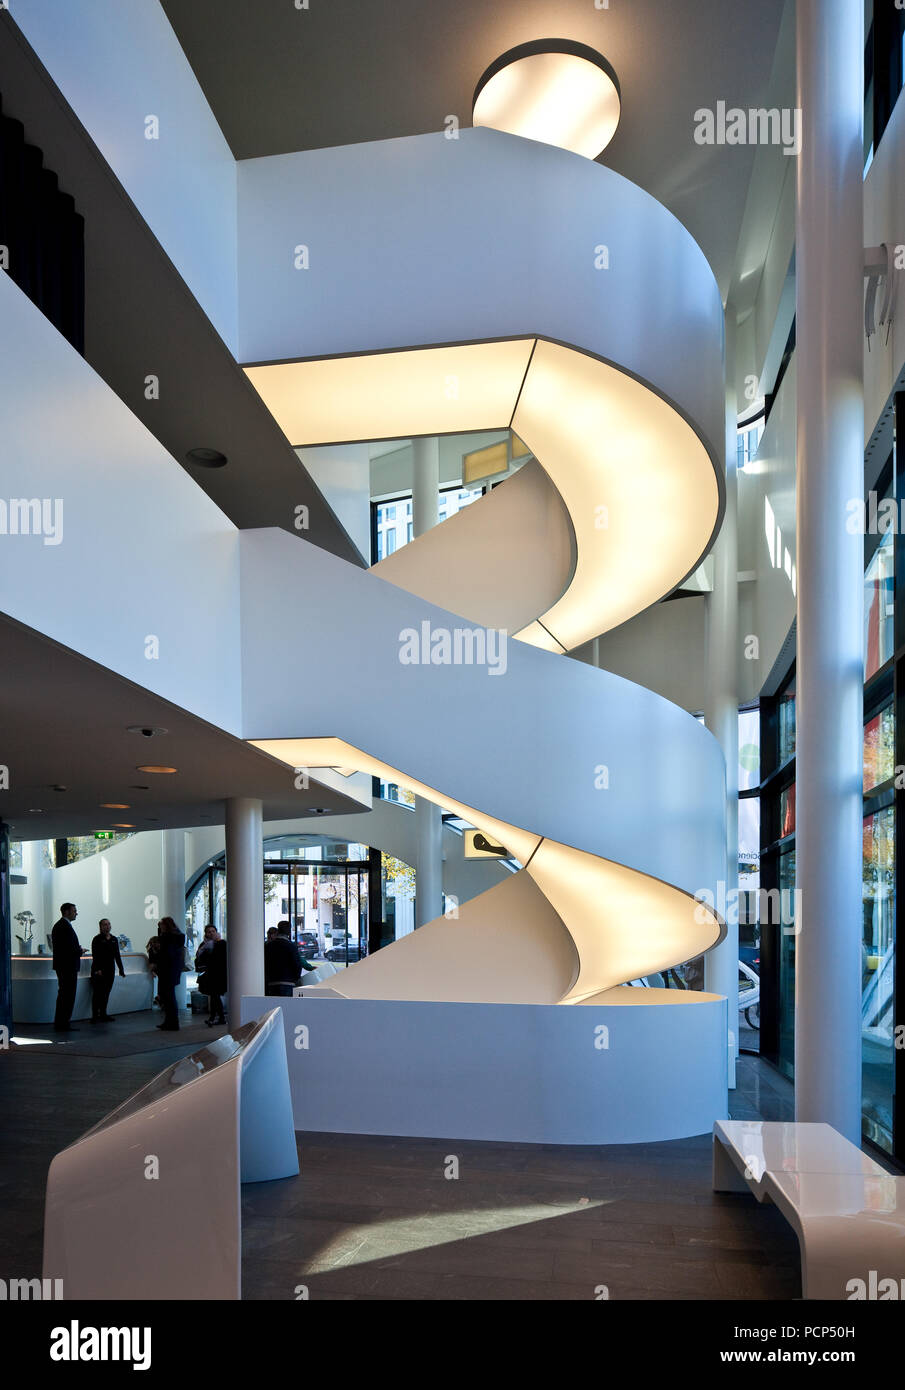 Fertiggestellt 2009 durch Gnädinger Architekten, von Südwesten Ansicht, Otto Bock HealthCare, Treppenaufgang Erdgeschoß im Foto de stock